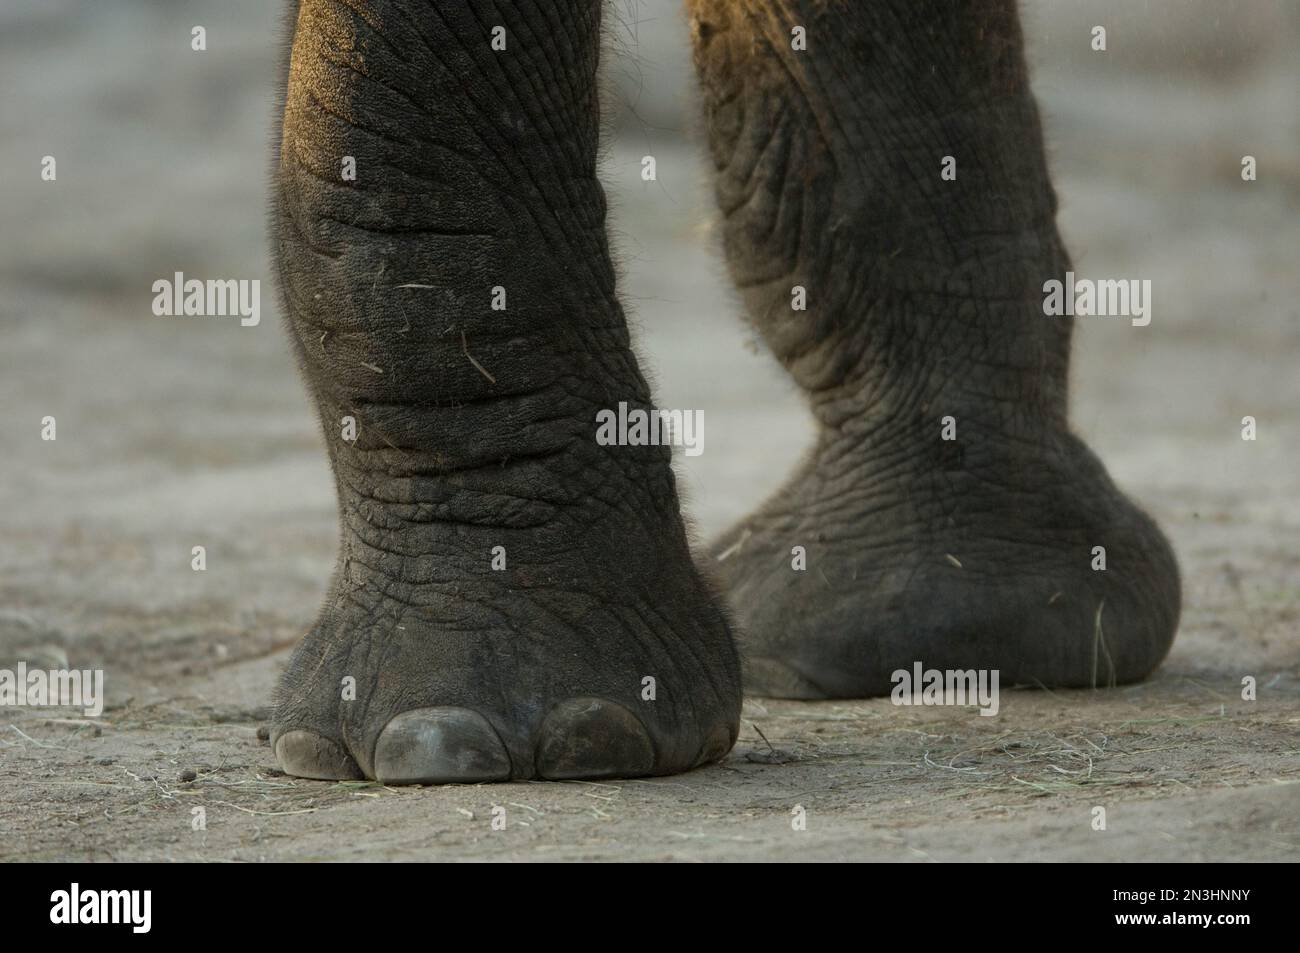 Nahaufnahme der Füße eines afrikanischen Elefanten (Loxodonta africana) in einem Zoo; Wichita, Kansas, Vereinigte Staaten von Amerika Stockfoto